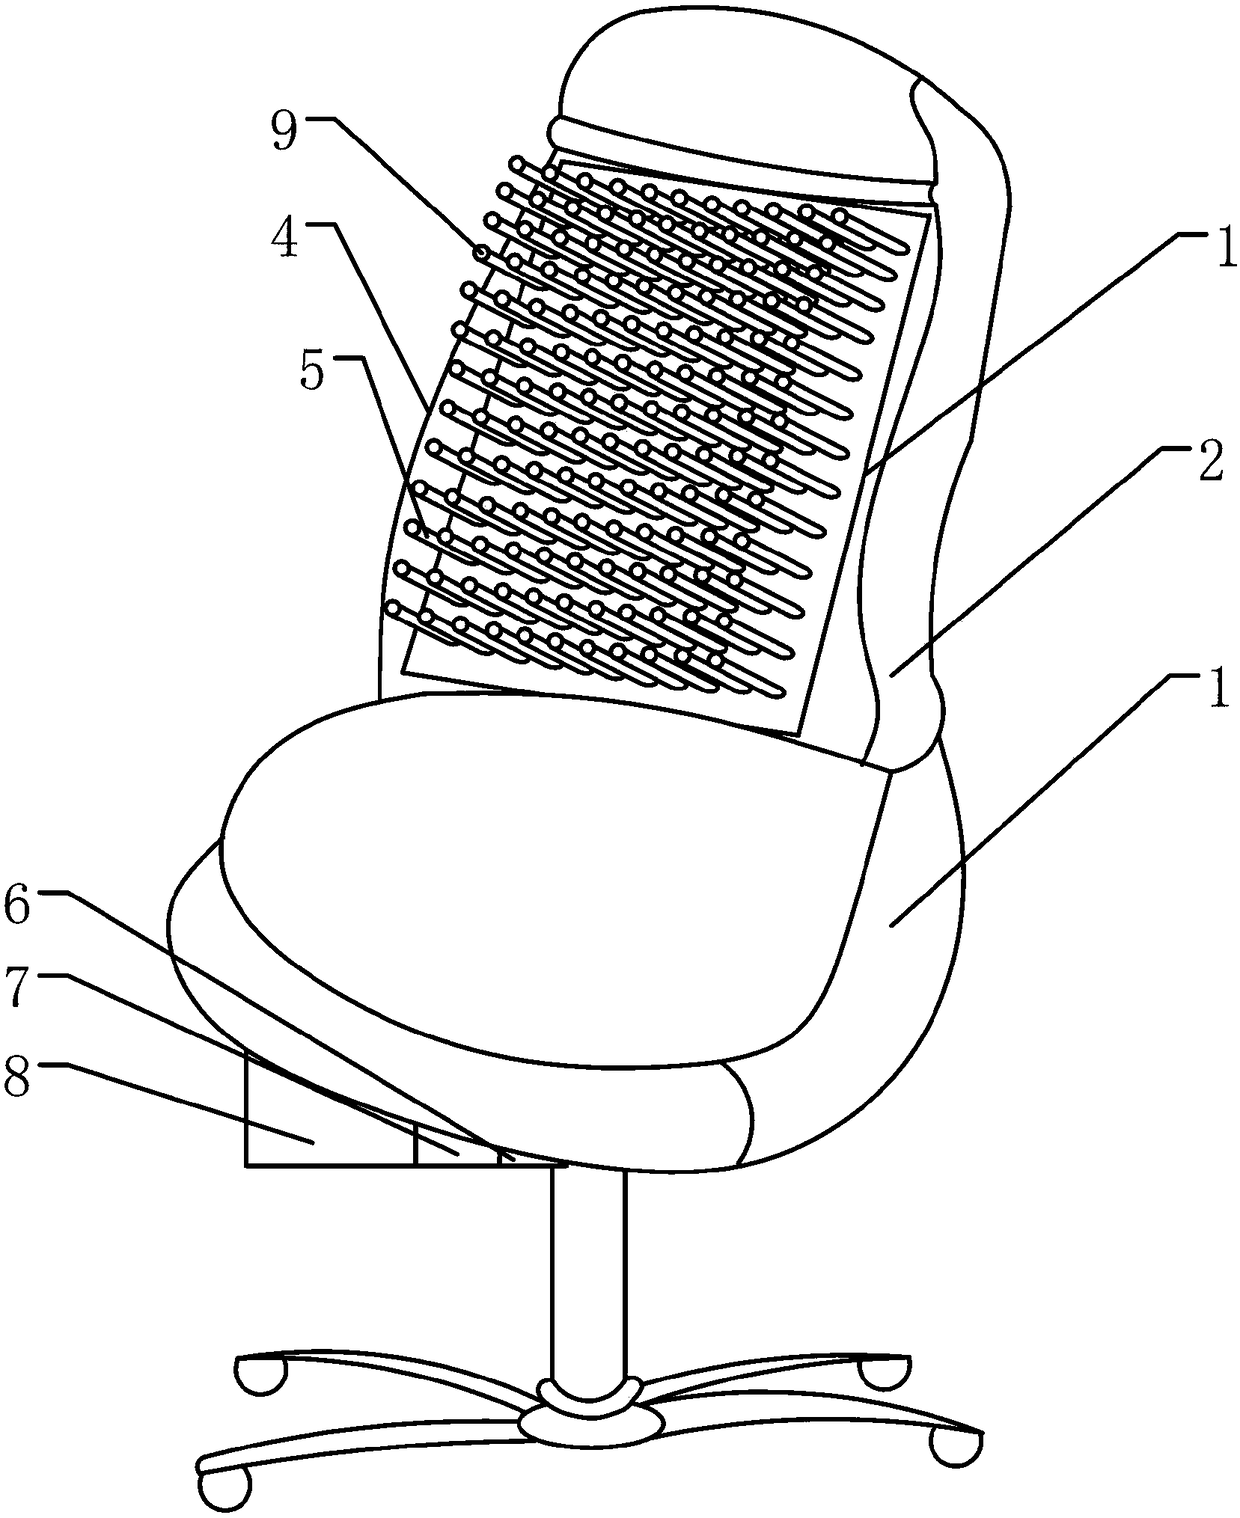 Mode switchable dot-matrix type intelligent massage chair